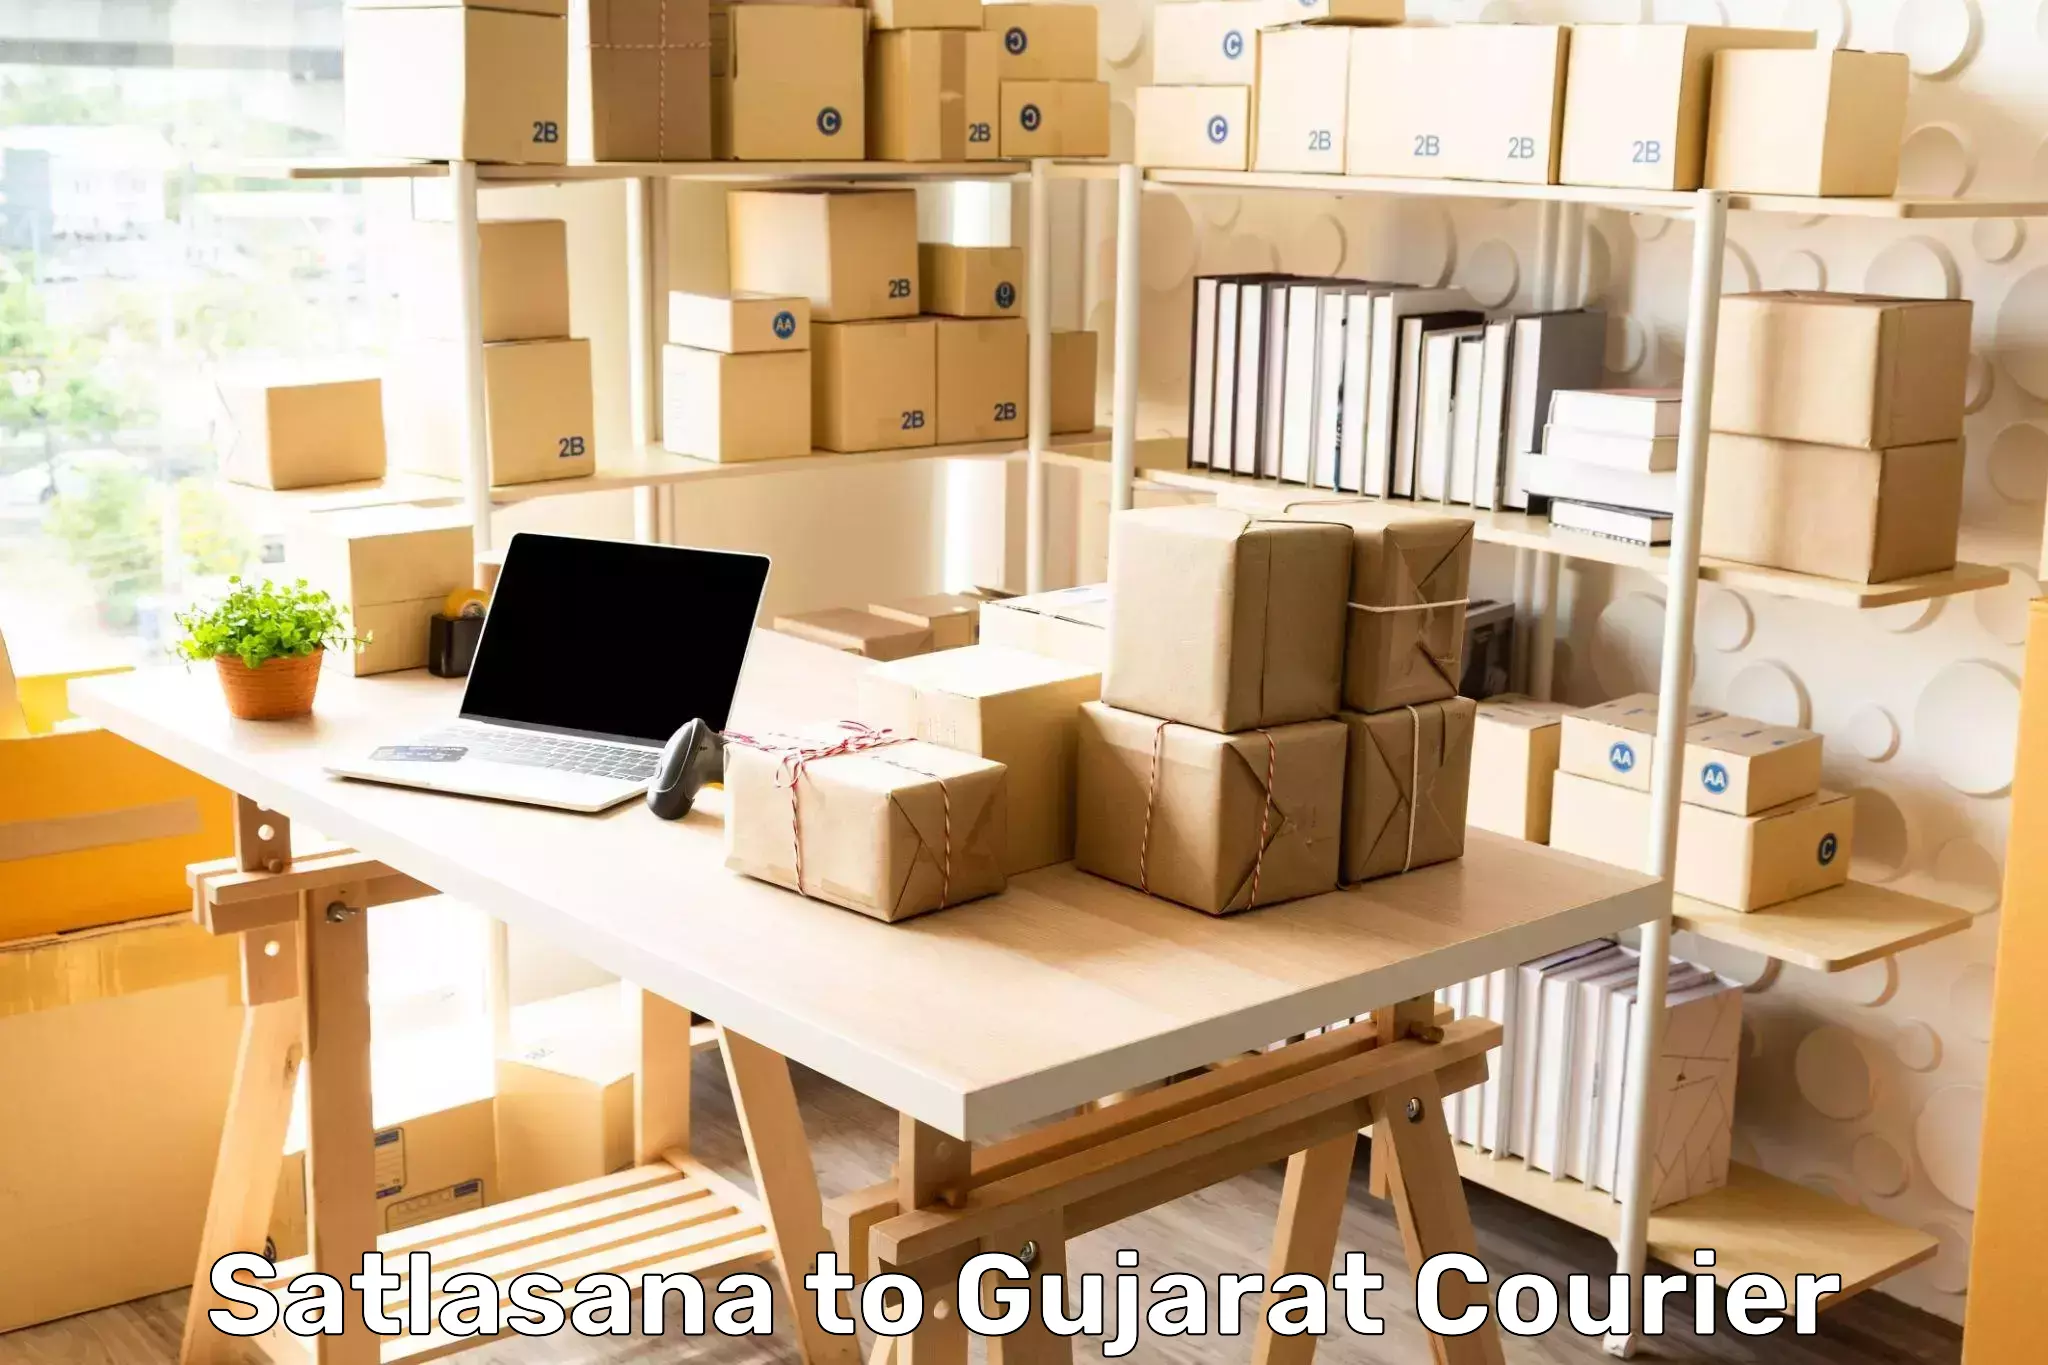 Courier service innovation Satlasana to Gujarat